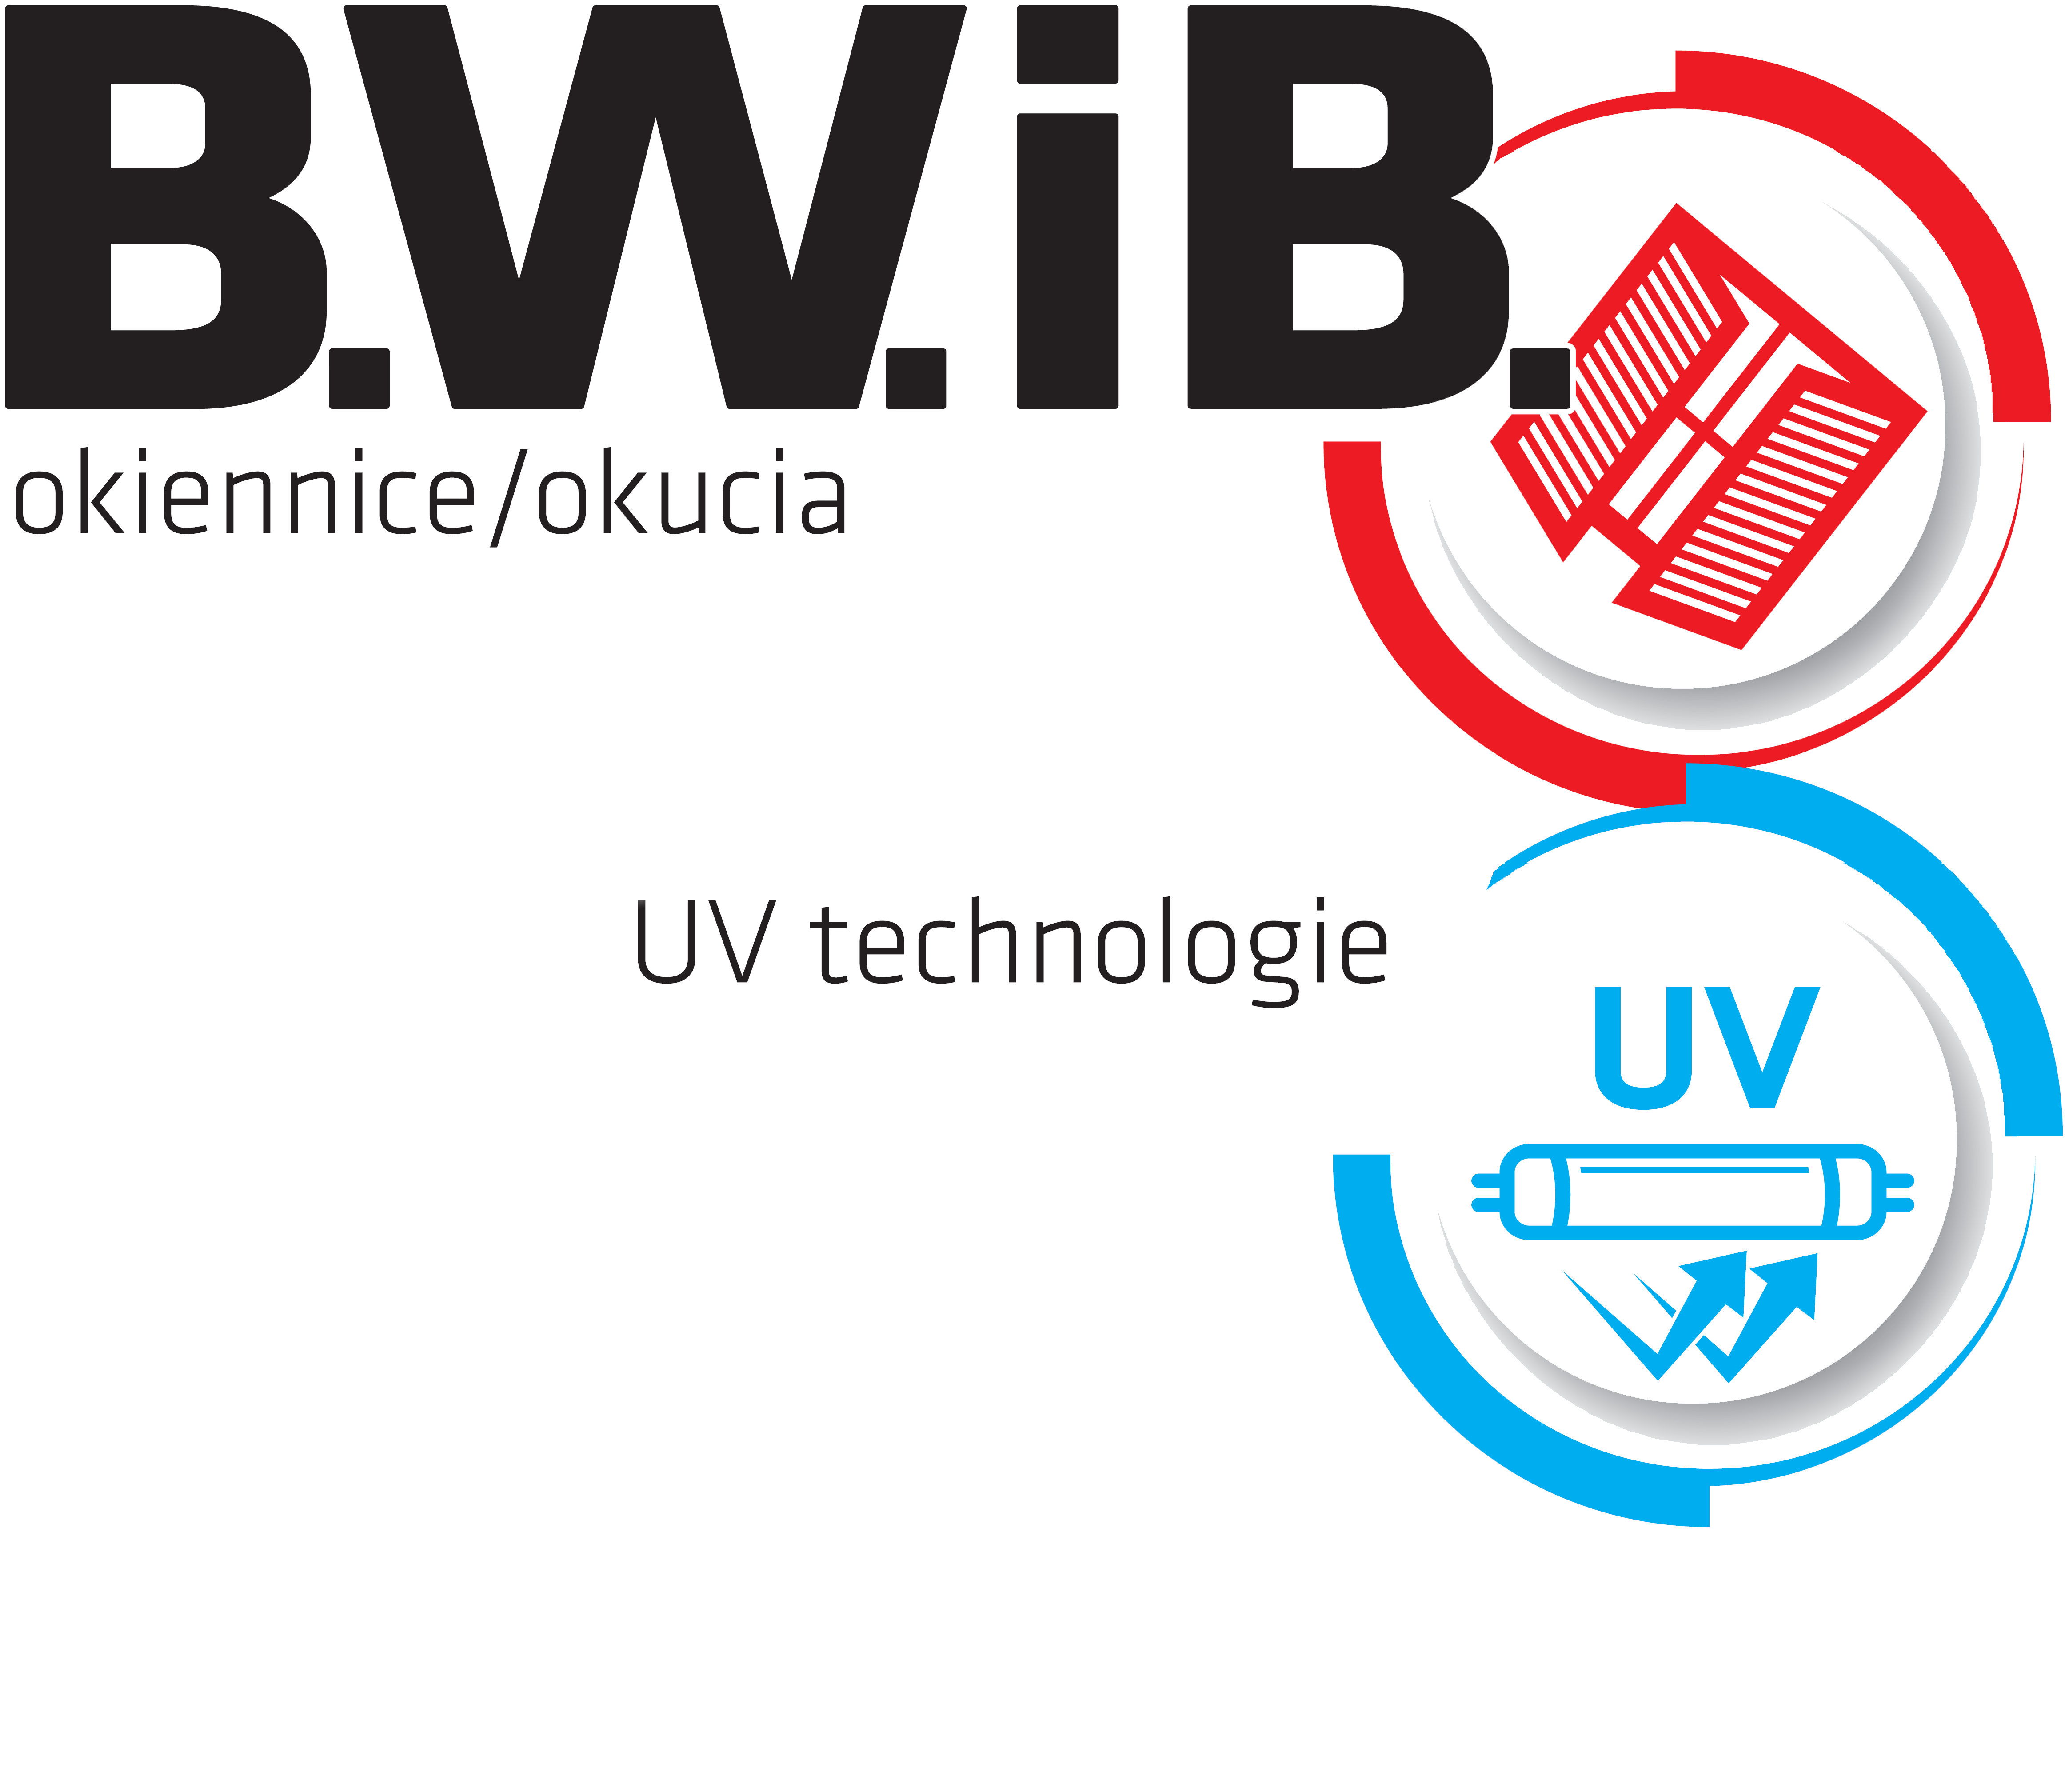 BWIB_logo[2063]2